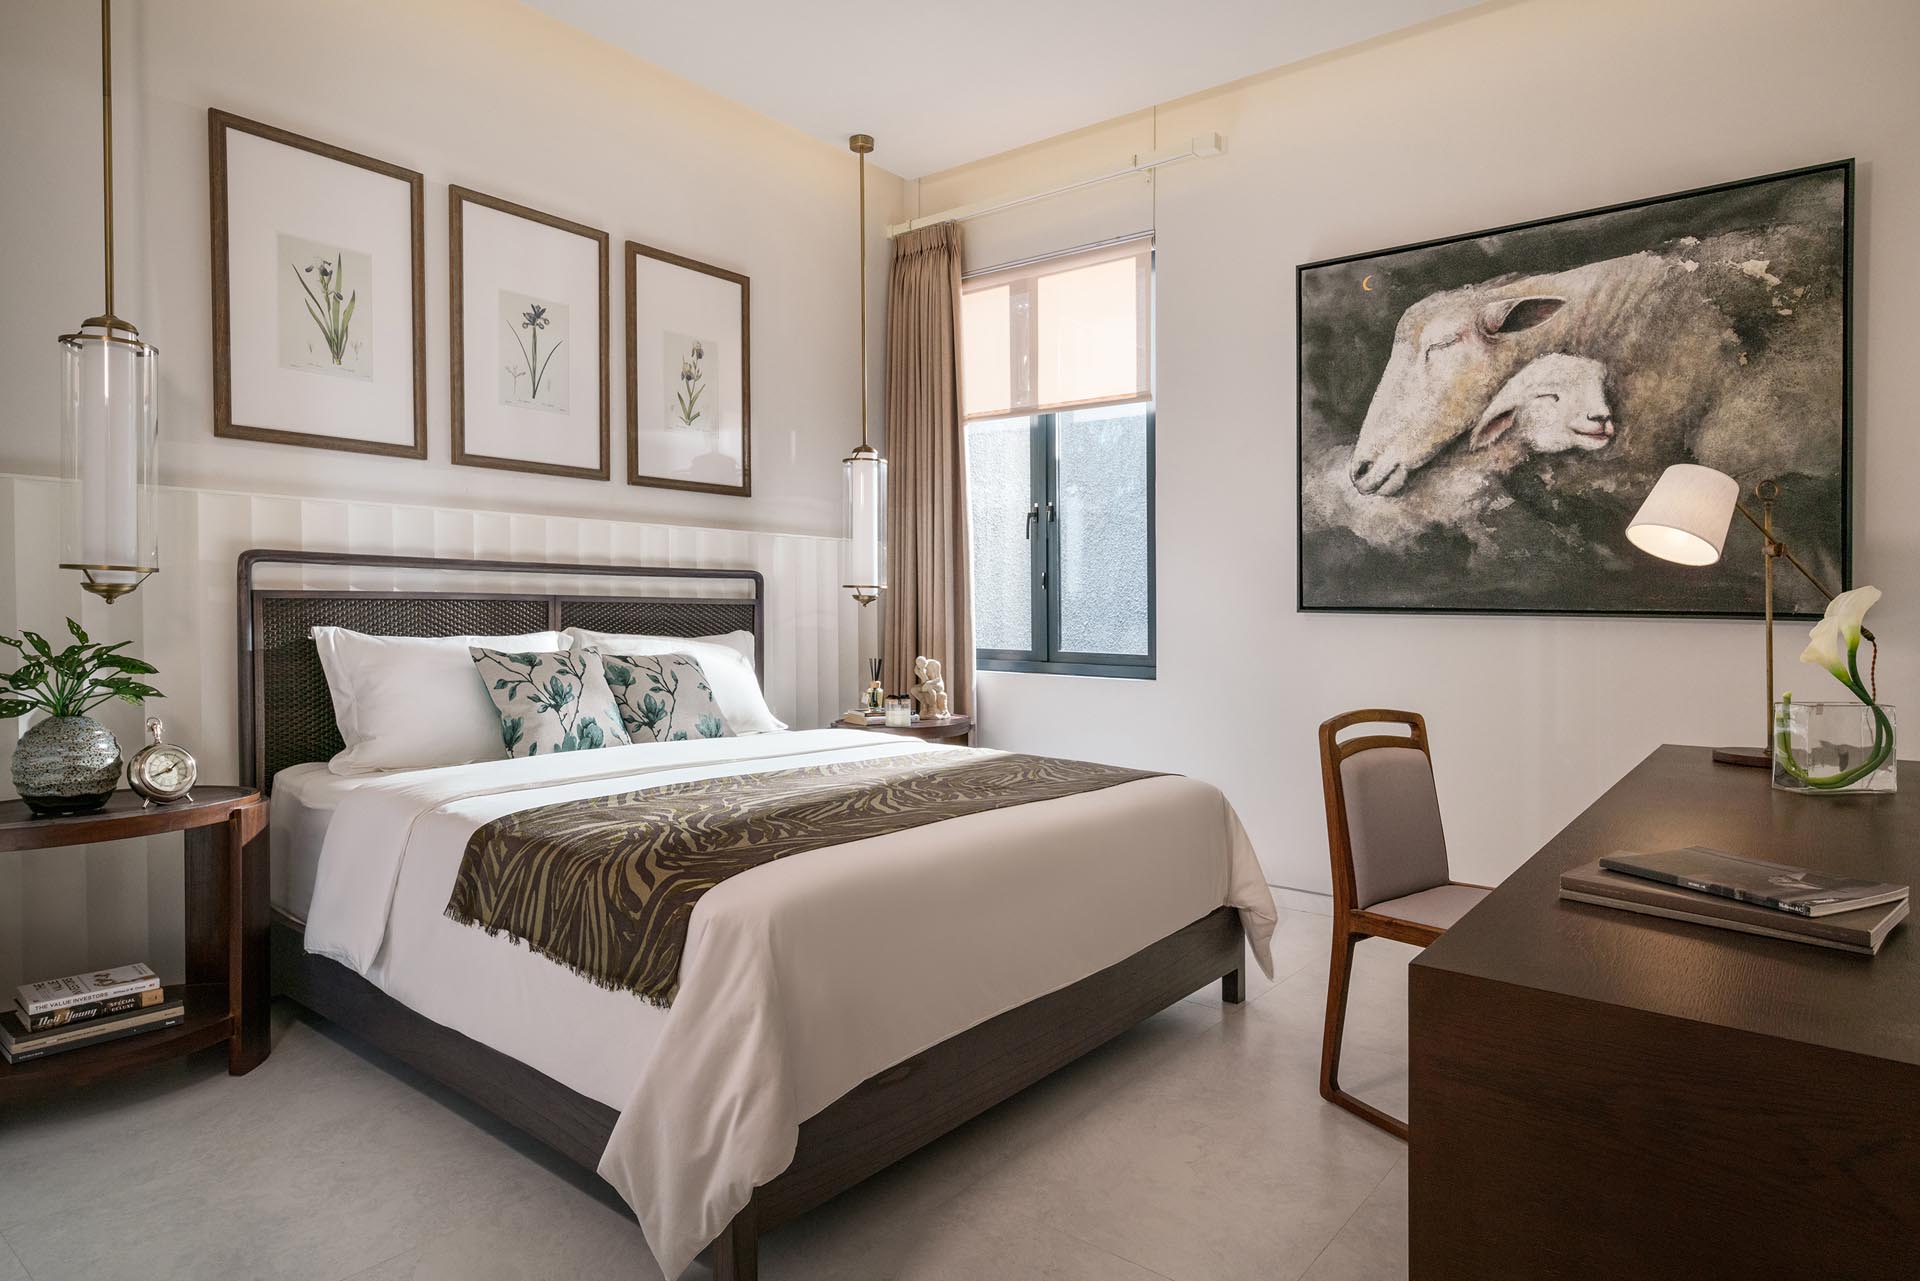 Phòng ngủ hiện đại với bảng màu trung tính và các điểm nhấn bằng gỗ.